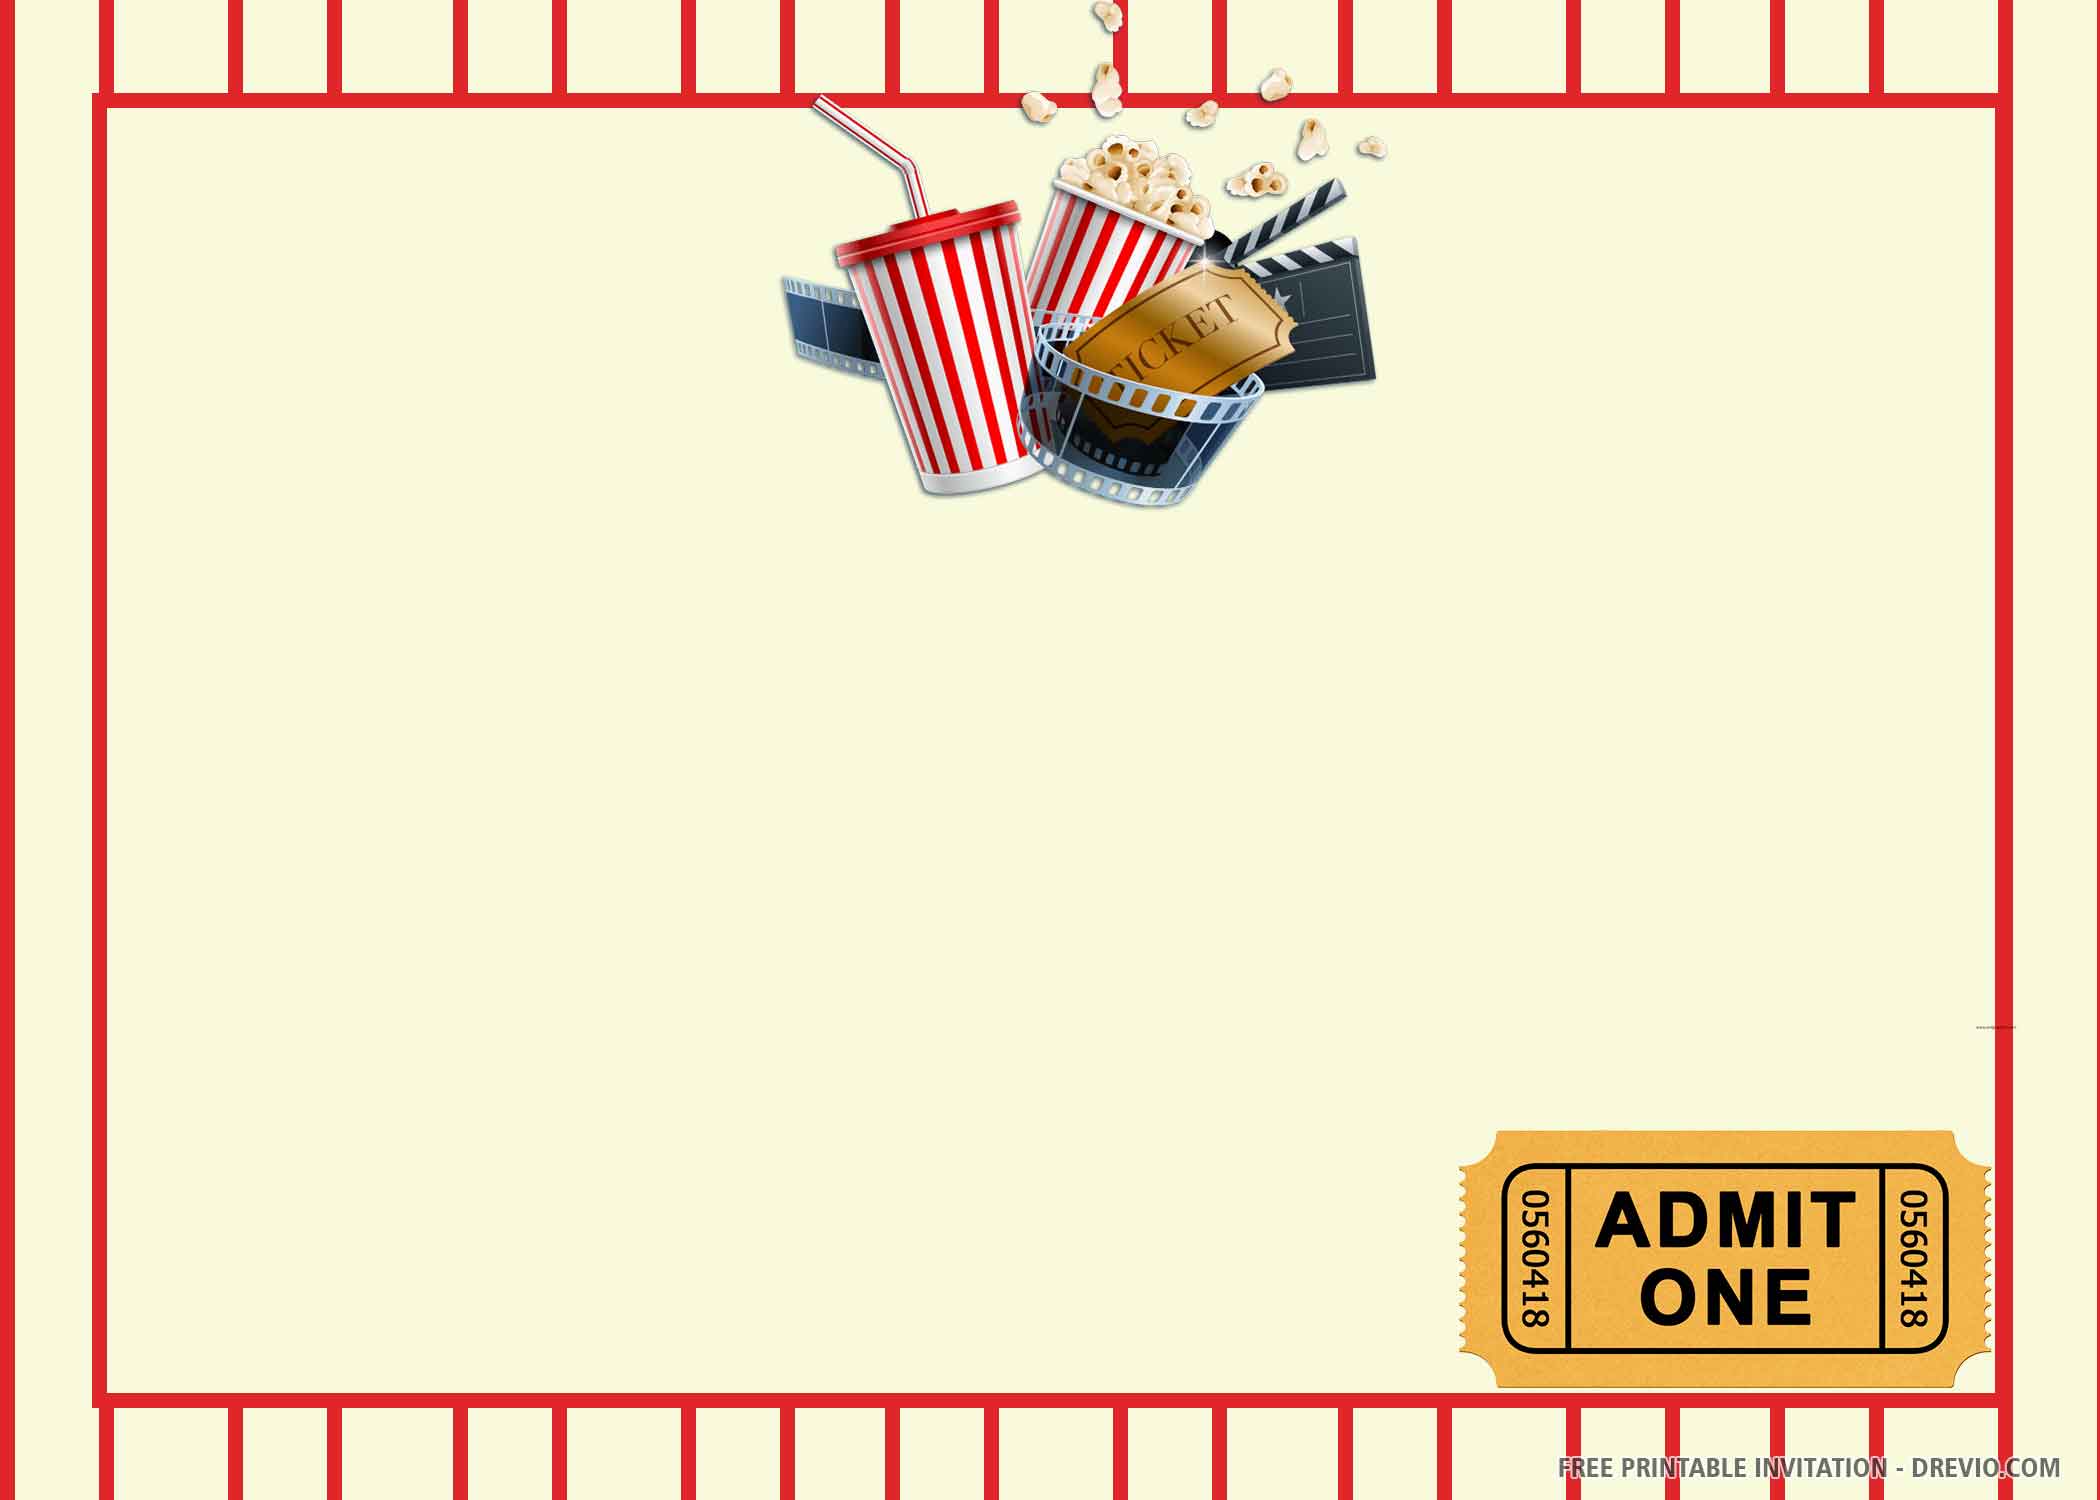 editable movie ticket template